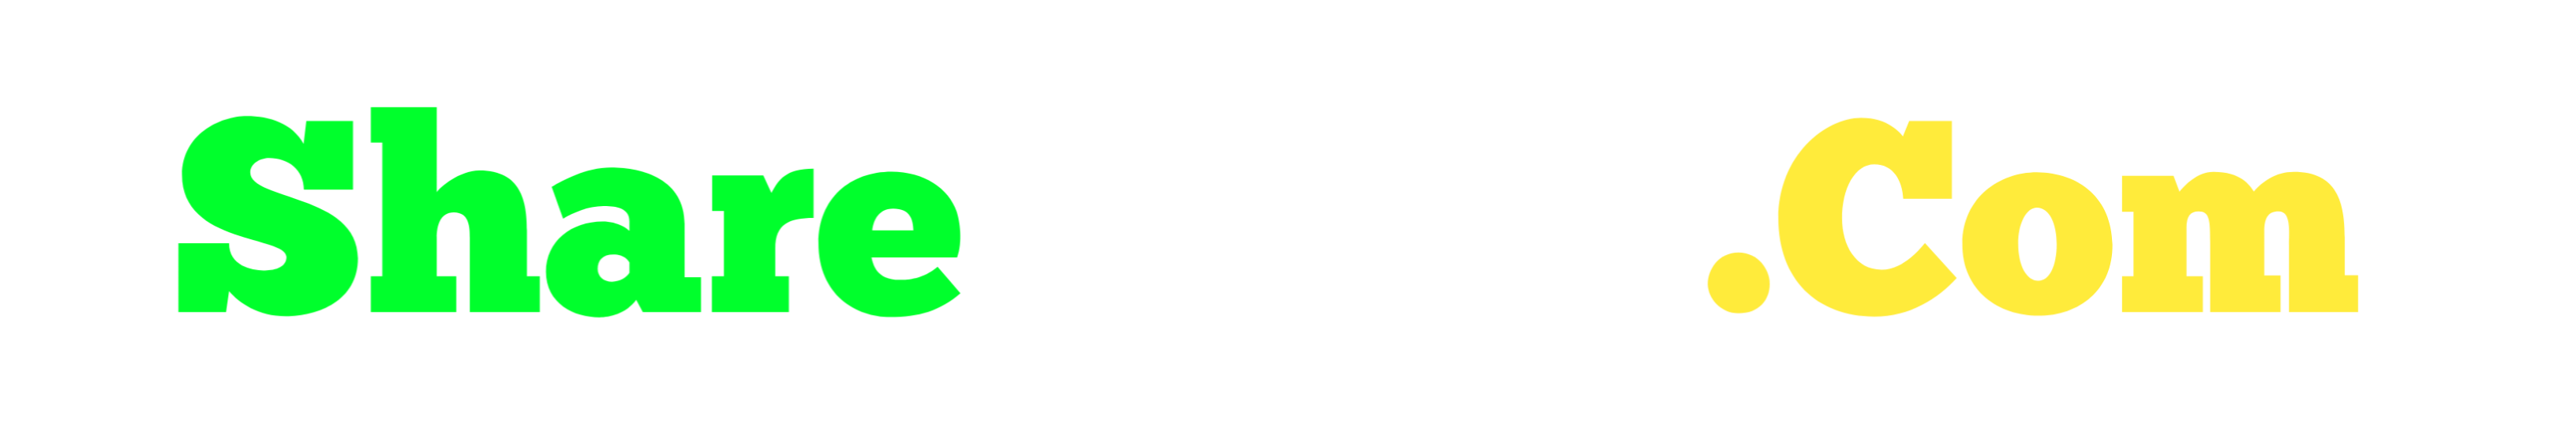 Share-Drop.Com